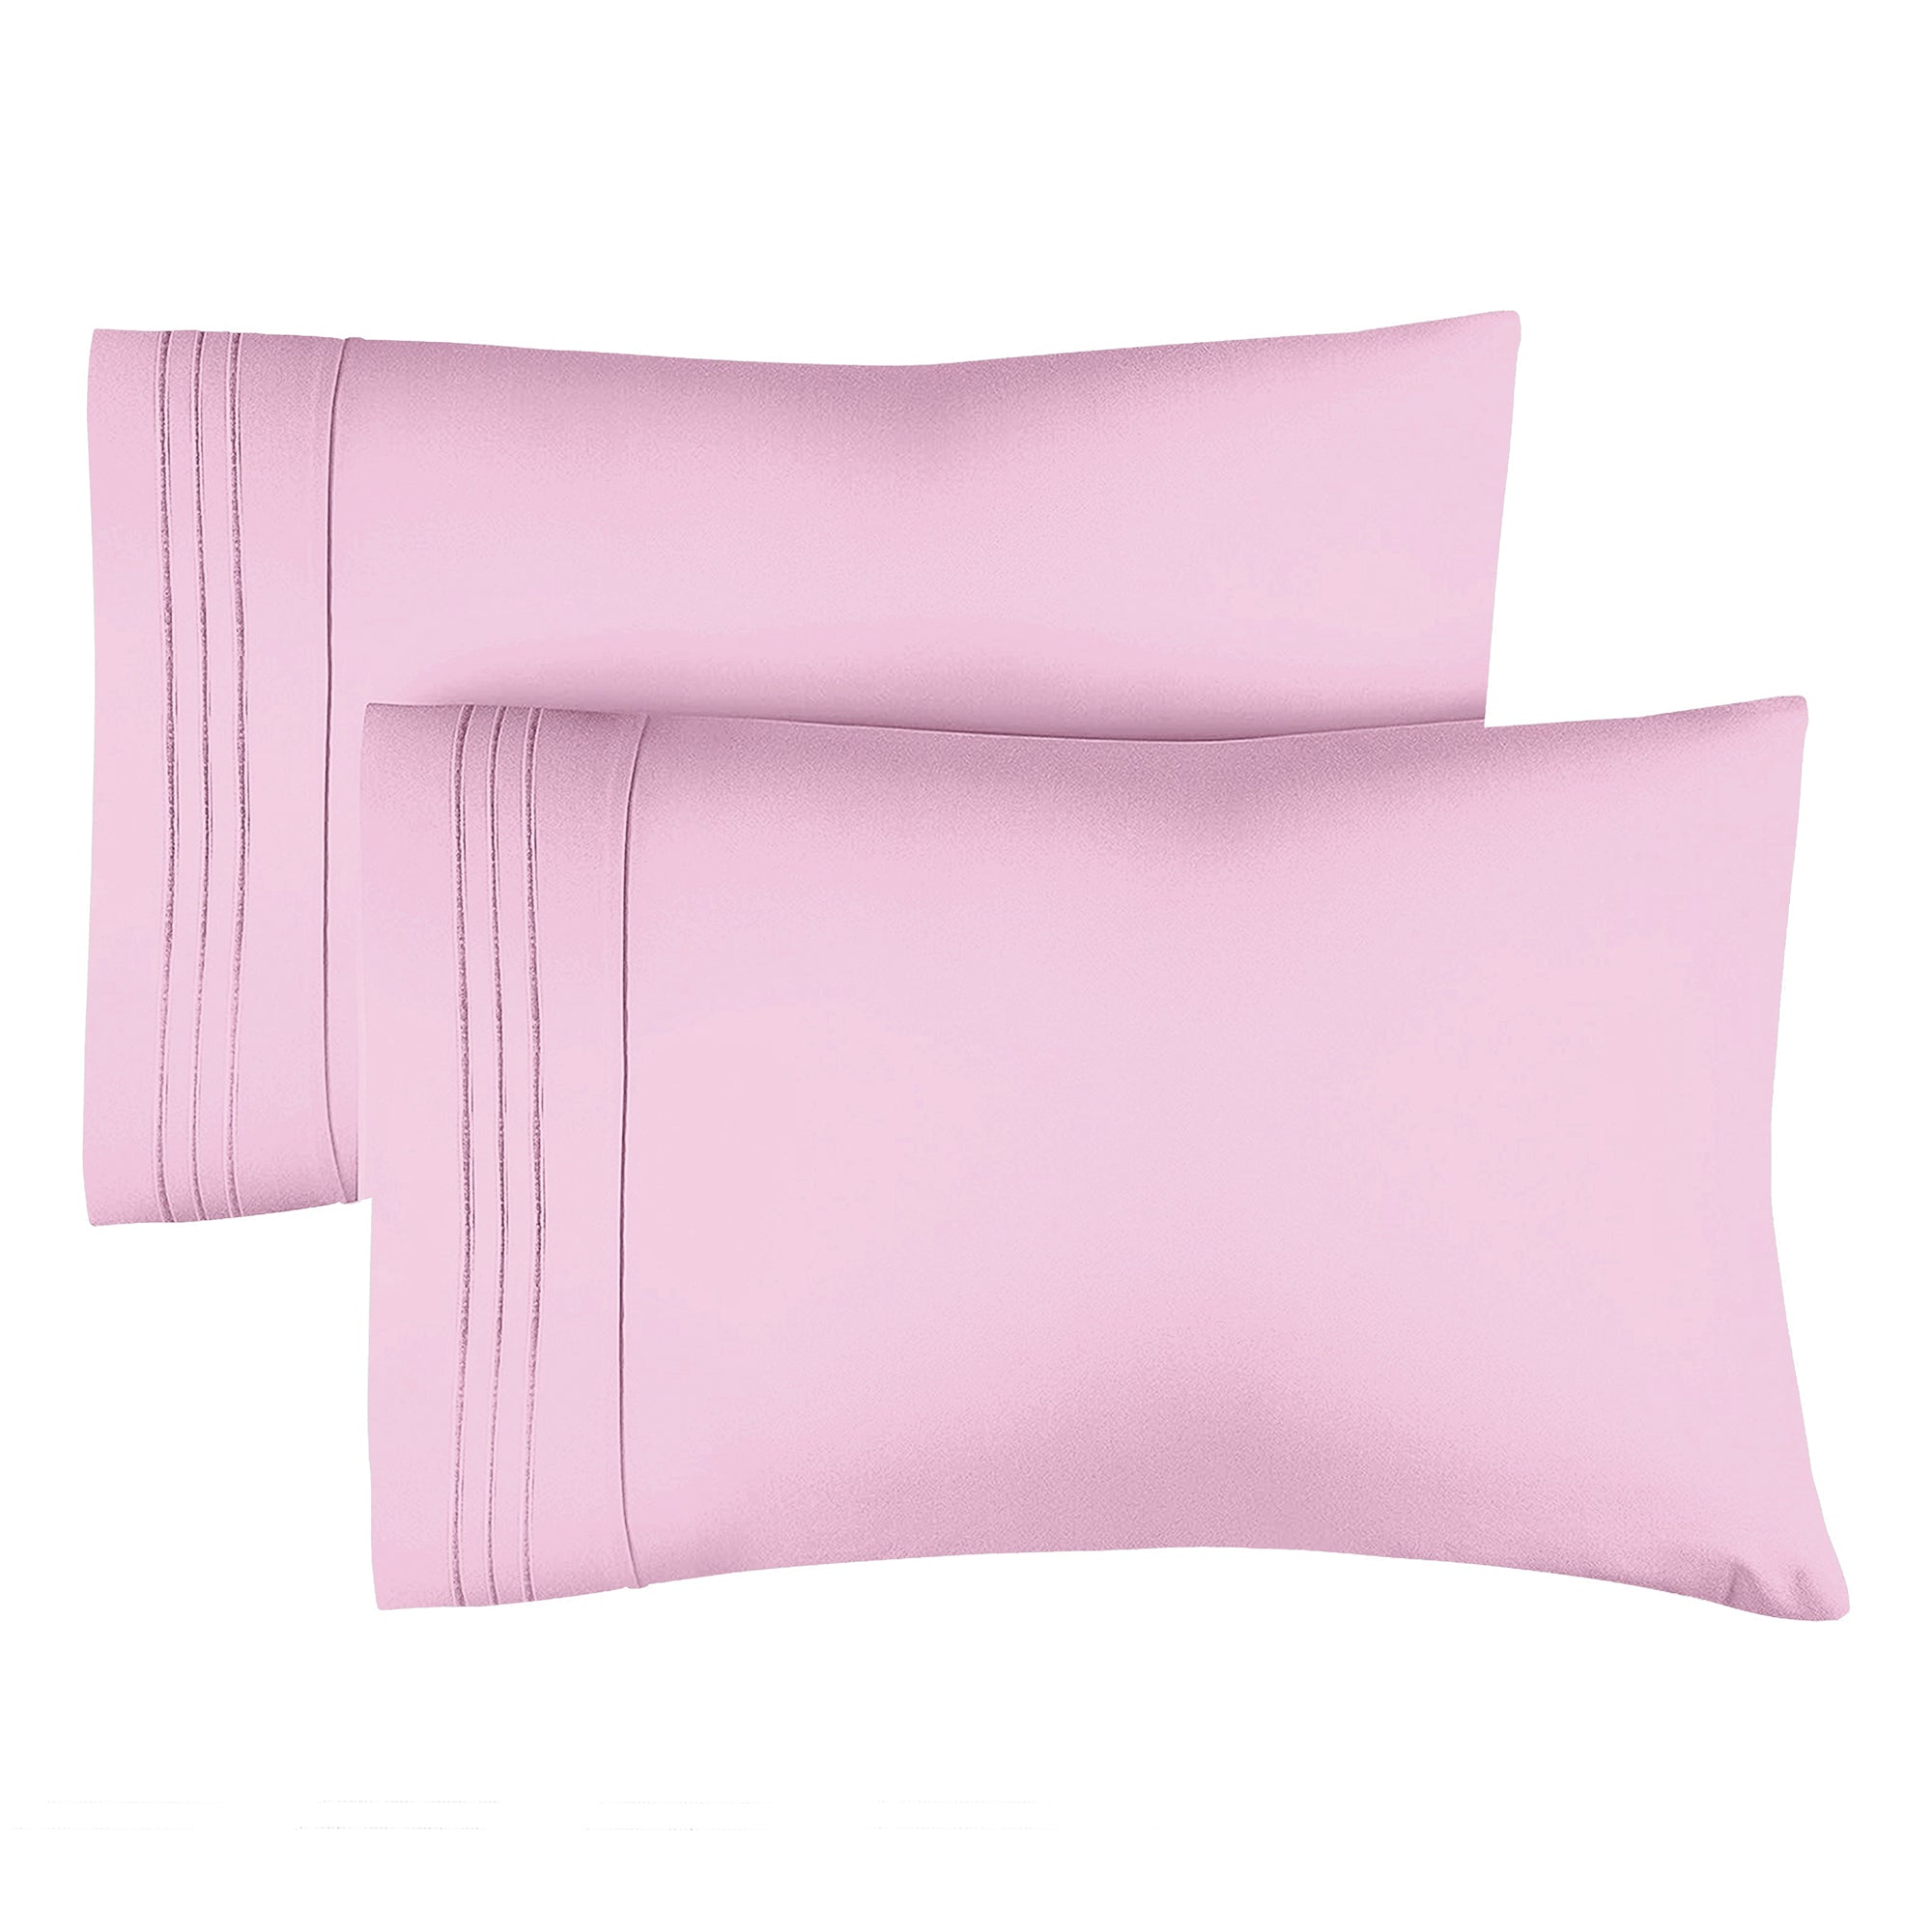 2 Pillowcase Set - Light Pink